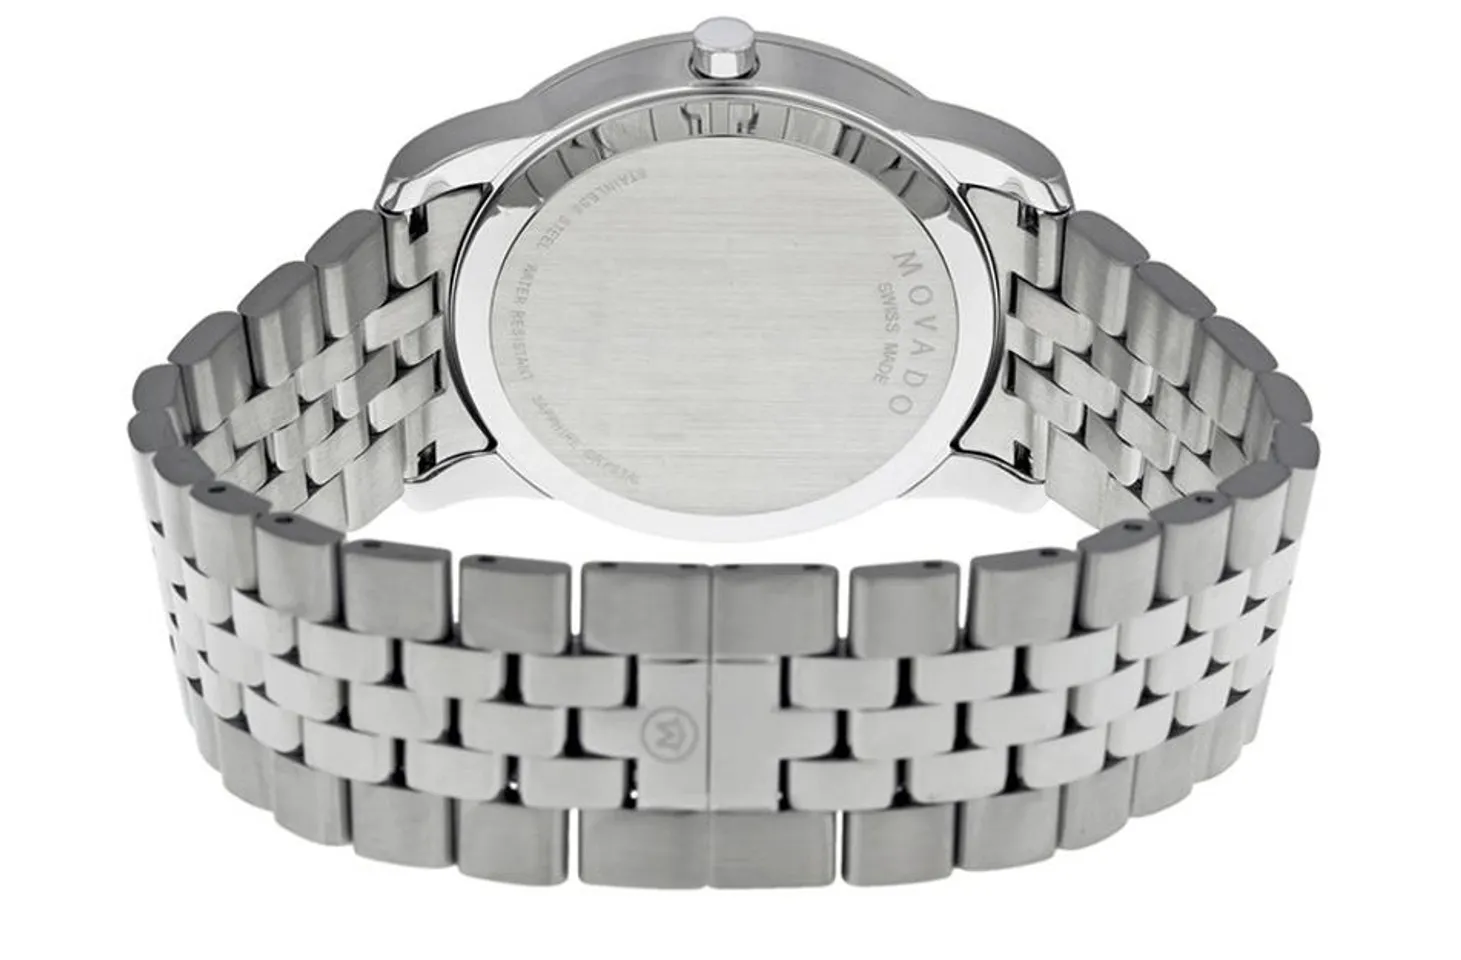 Chiếc đồng hồ Thụy Sỹ này được thiết kế khóa bướm cao cấp, chắc chắn